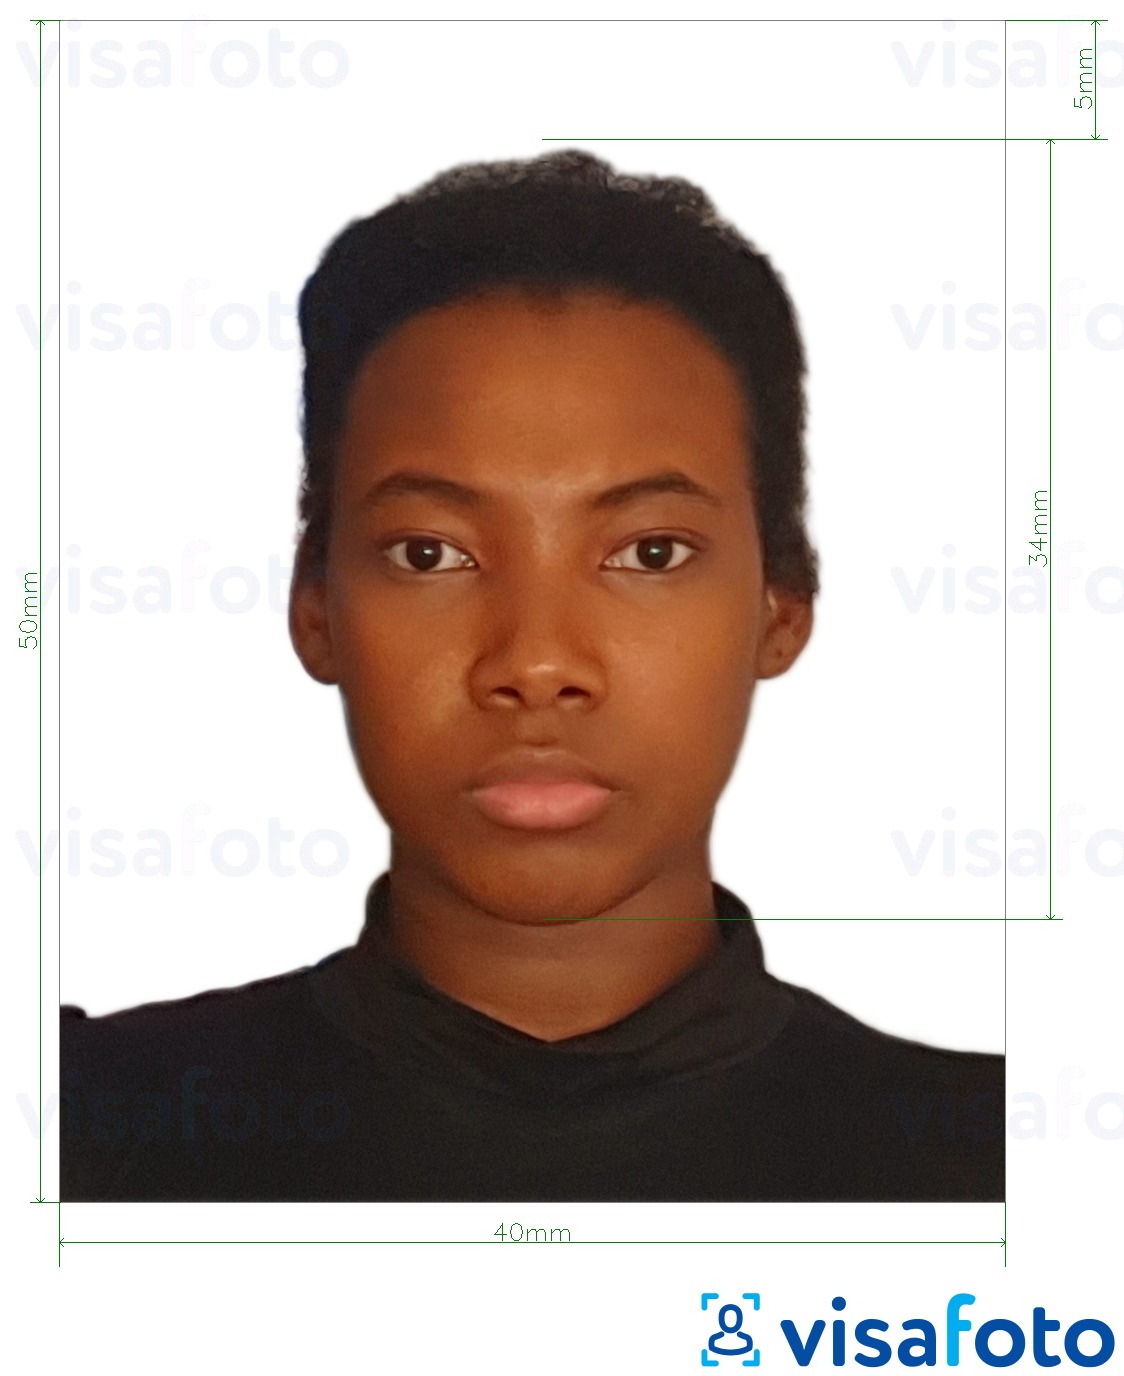 Exemple de foto per a Visa República Dominicana 4x5 cm amb la mida exacta especificada